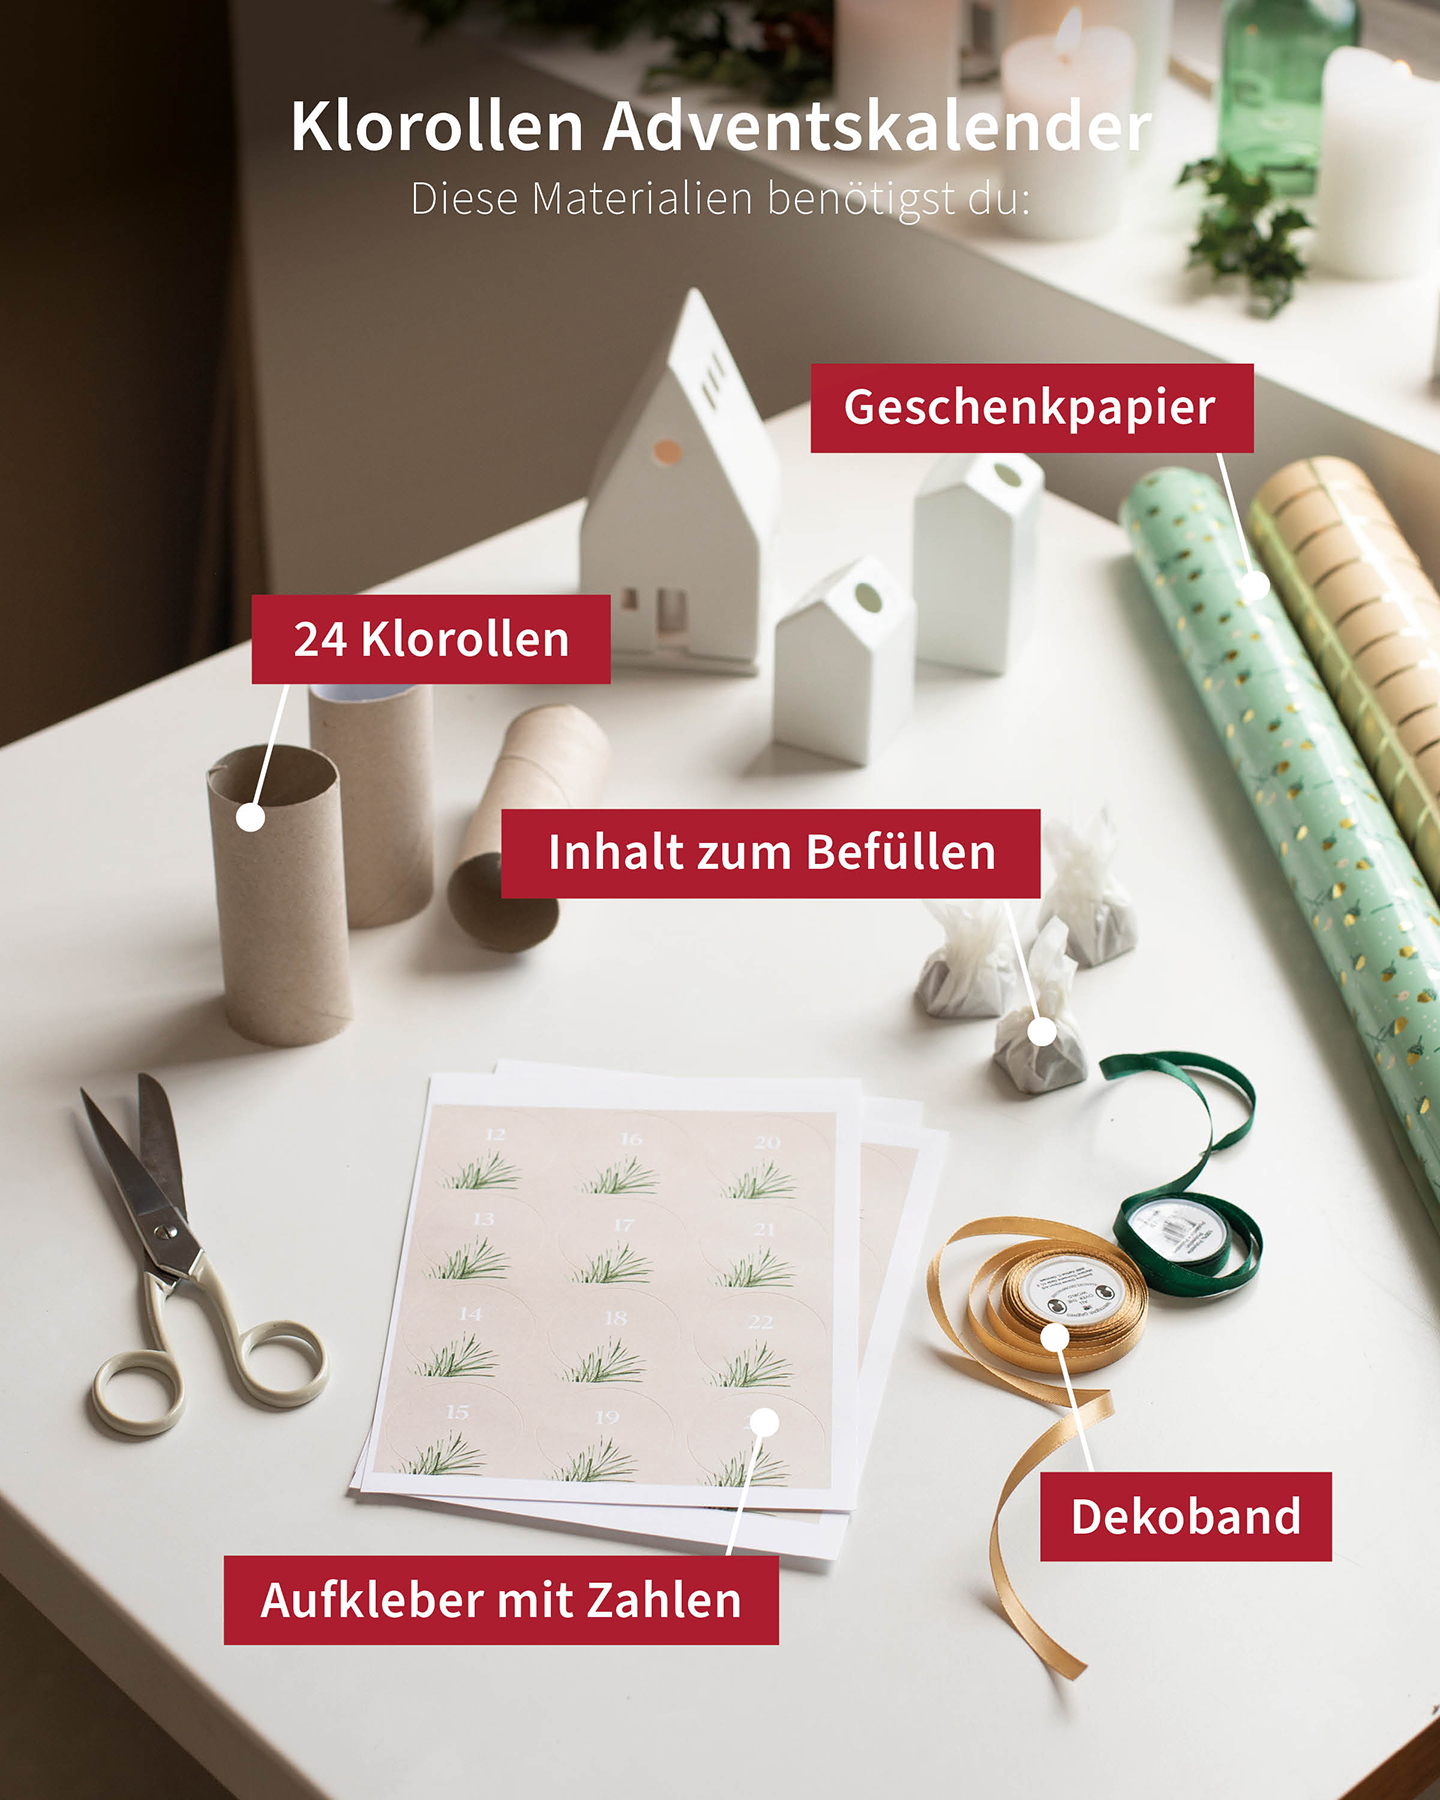 15 min Weihnachten in Tüte basteln - Stampin´Up! - Geschenkidee -  Weihnachtstüte - Adventskalender 